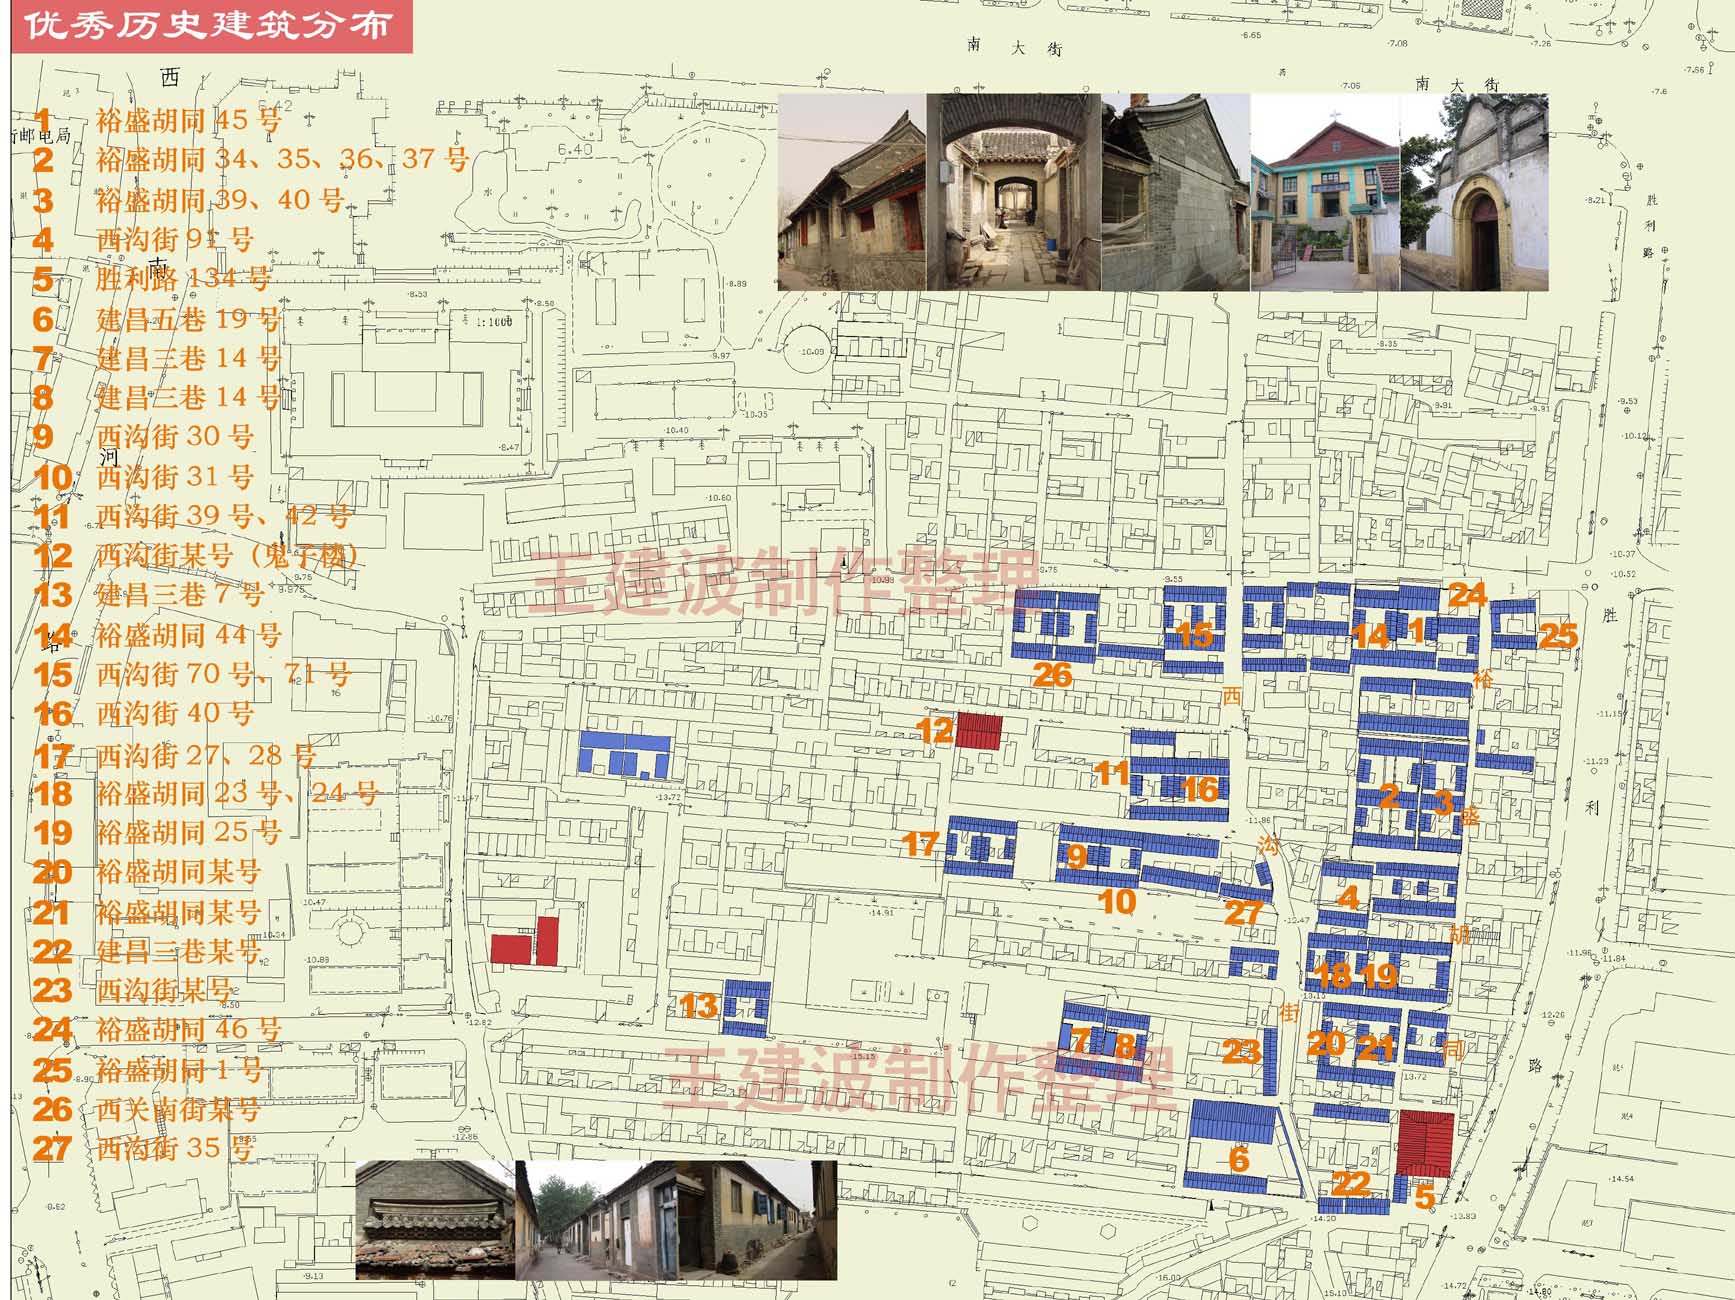 02文化广场规划-建筑分布1.jpg